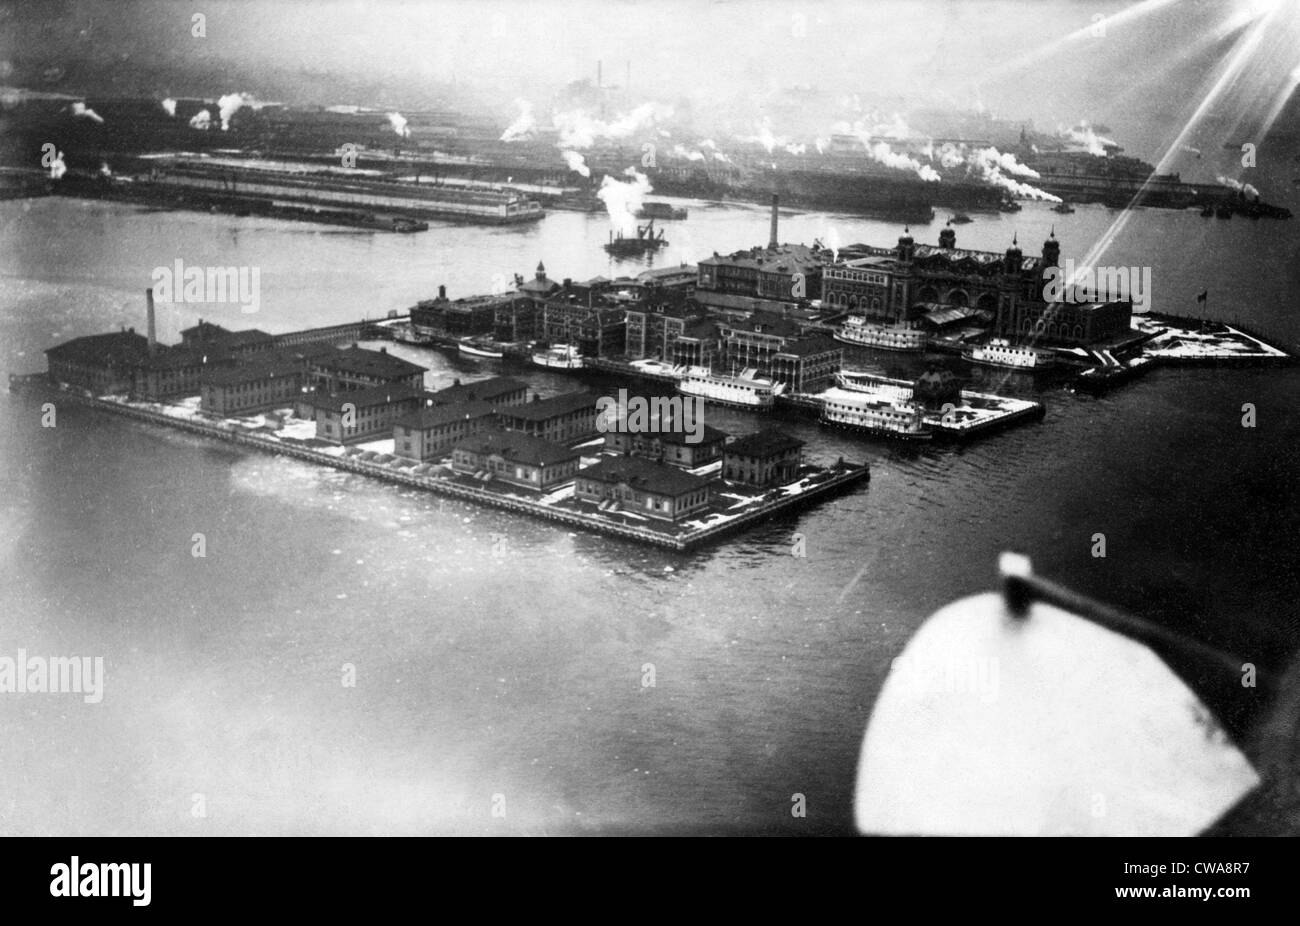 Blick auf Ellis Island von Flugzeug, New York City, ca. 1912. Höflichkeit: CSU Archive/Everett Collection Stockfoto